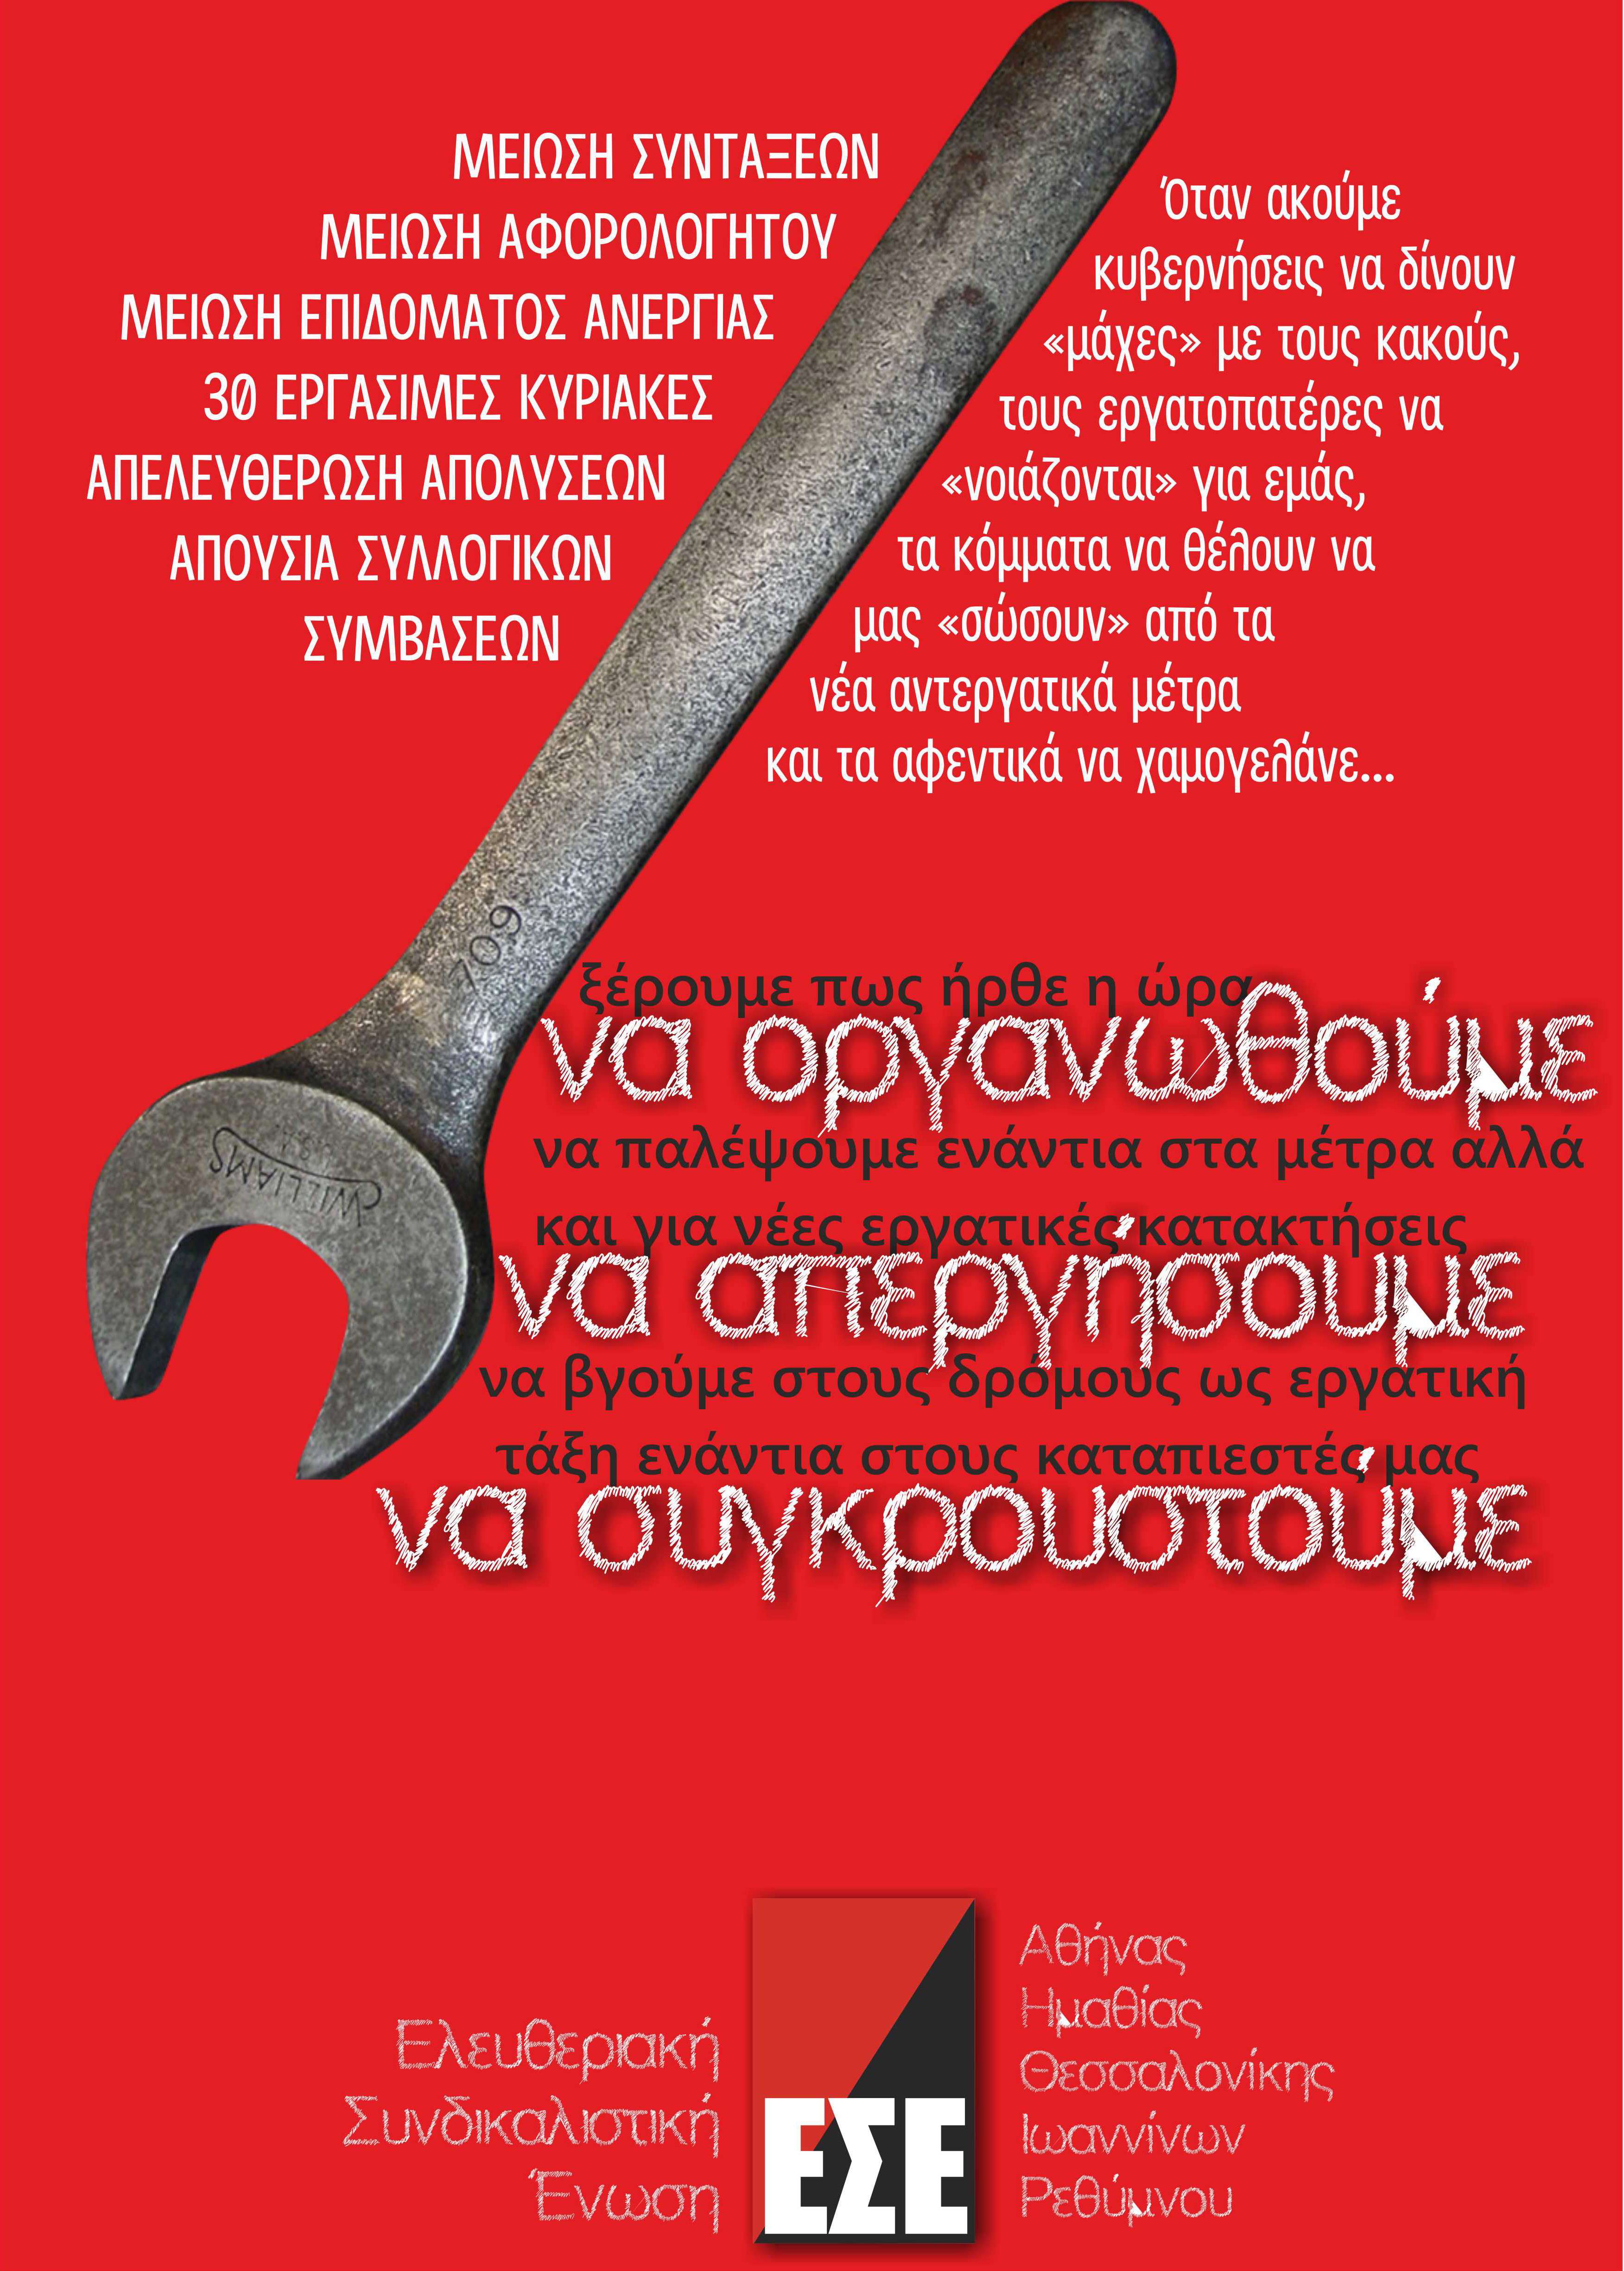 ΕΣΕ: Πανελλαδική αφίσα για την απεργία ενάντια στα αντεργατικά μέτρα.